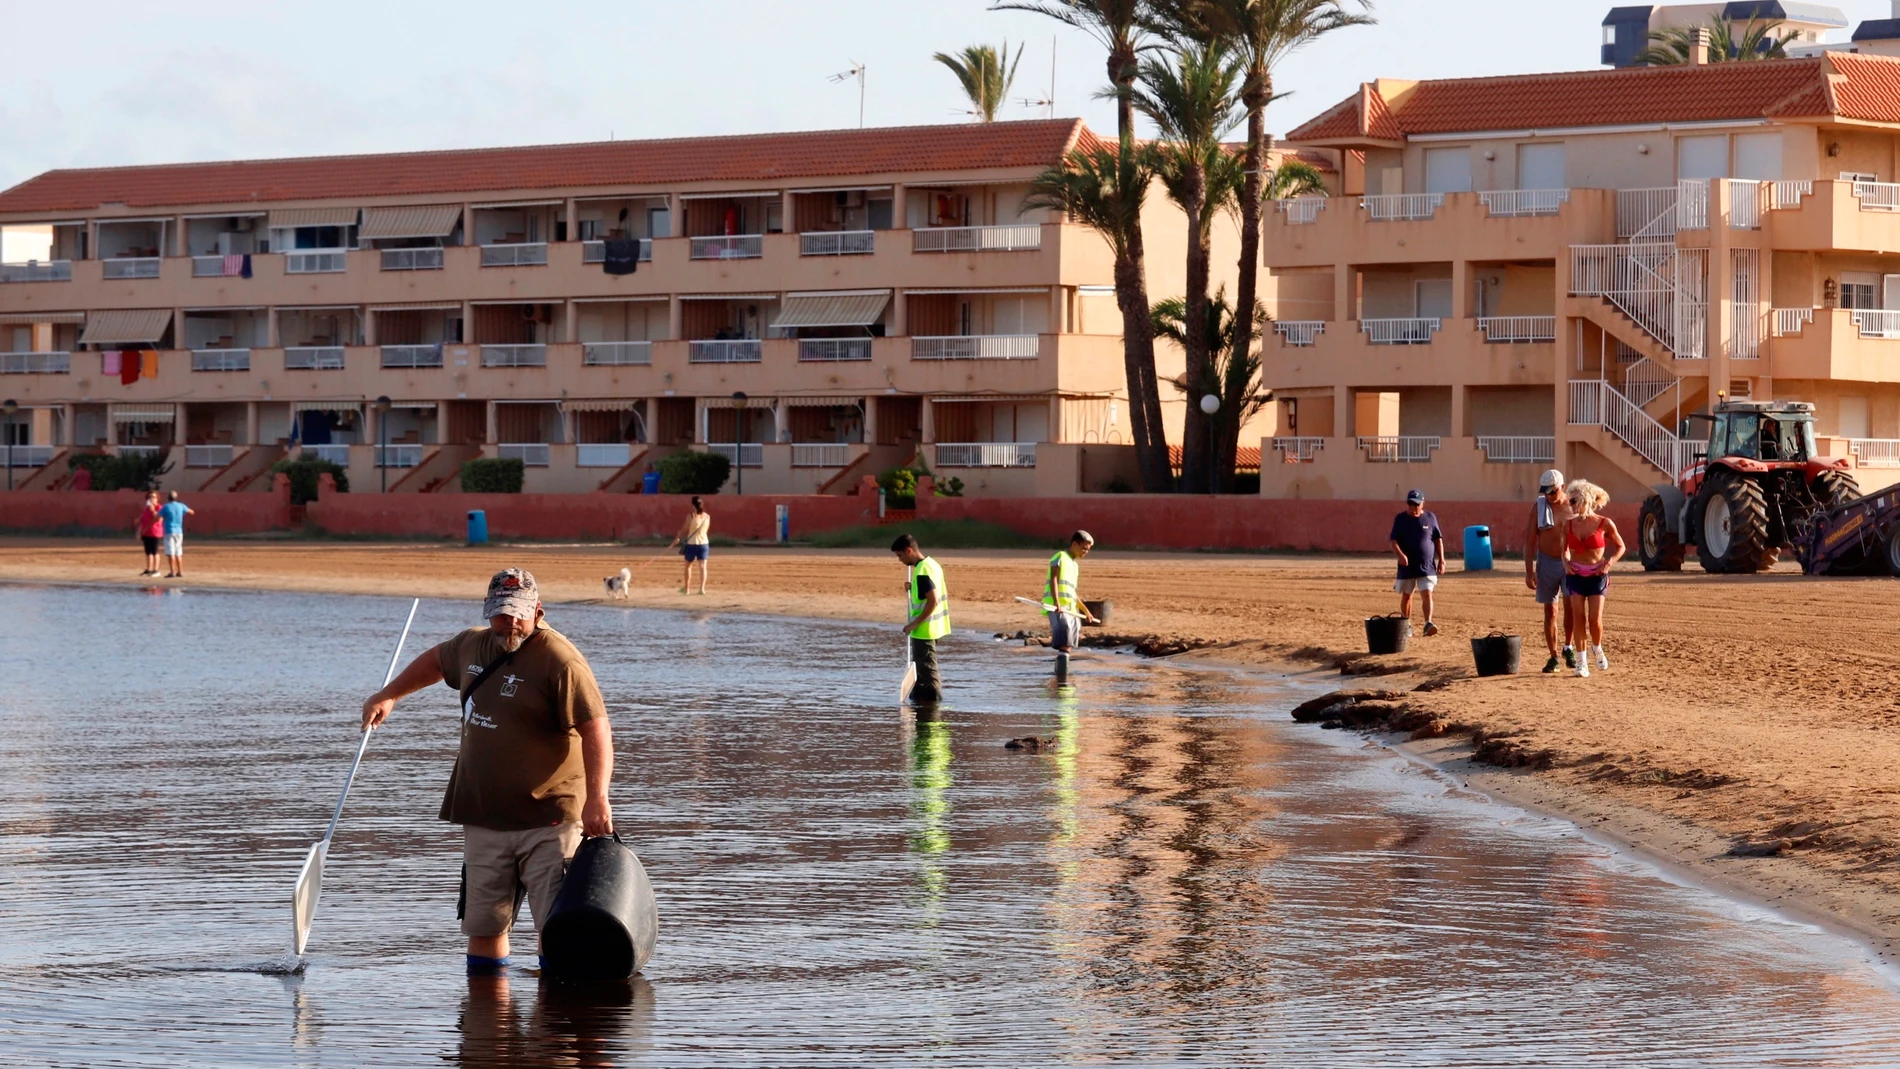 Operarios en las labores de limpieza en la playa de Puerto Bello de La Manga del Mar Menor (Murcia), tras diez días de aparición de peces muertos en la orilla por falta de oxígeno